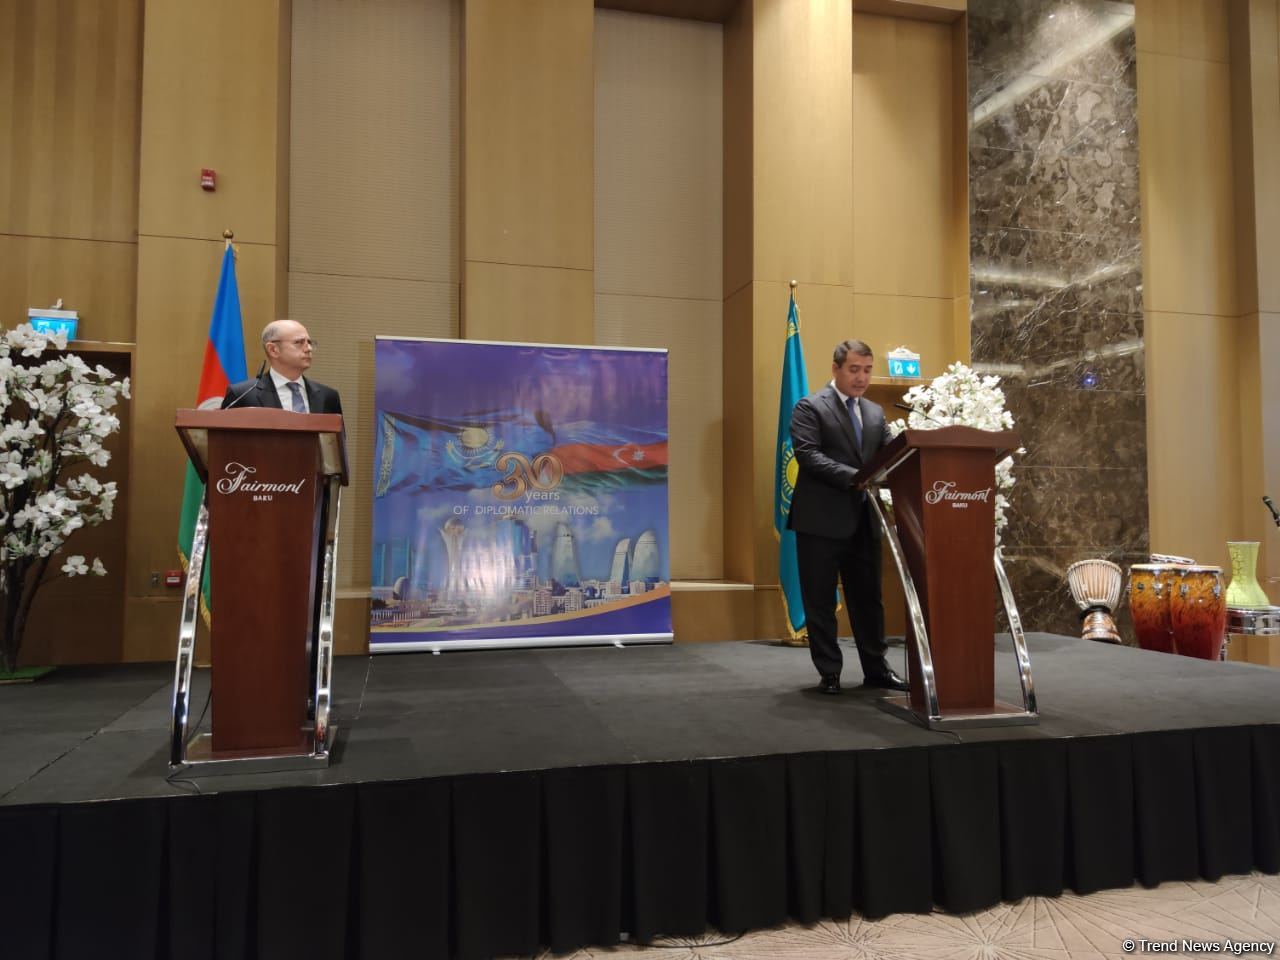 Подписанная между Азербайджаном и Казахстаном декларация подняла отношения двух стран на новый уровень - посол